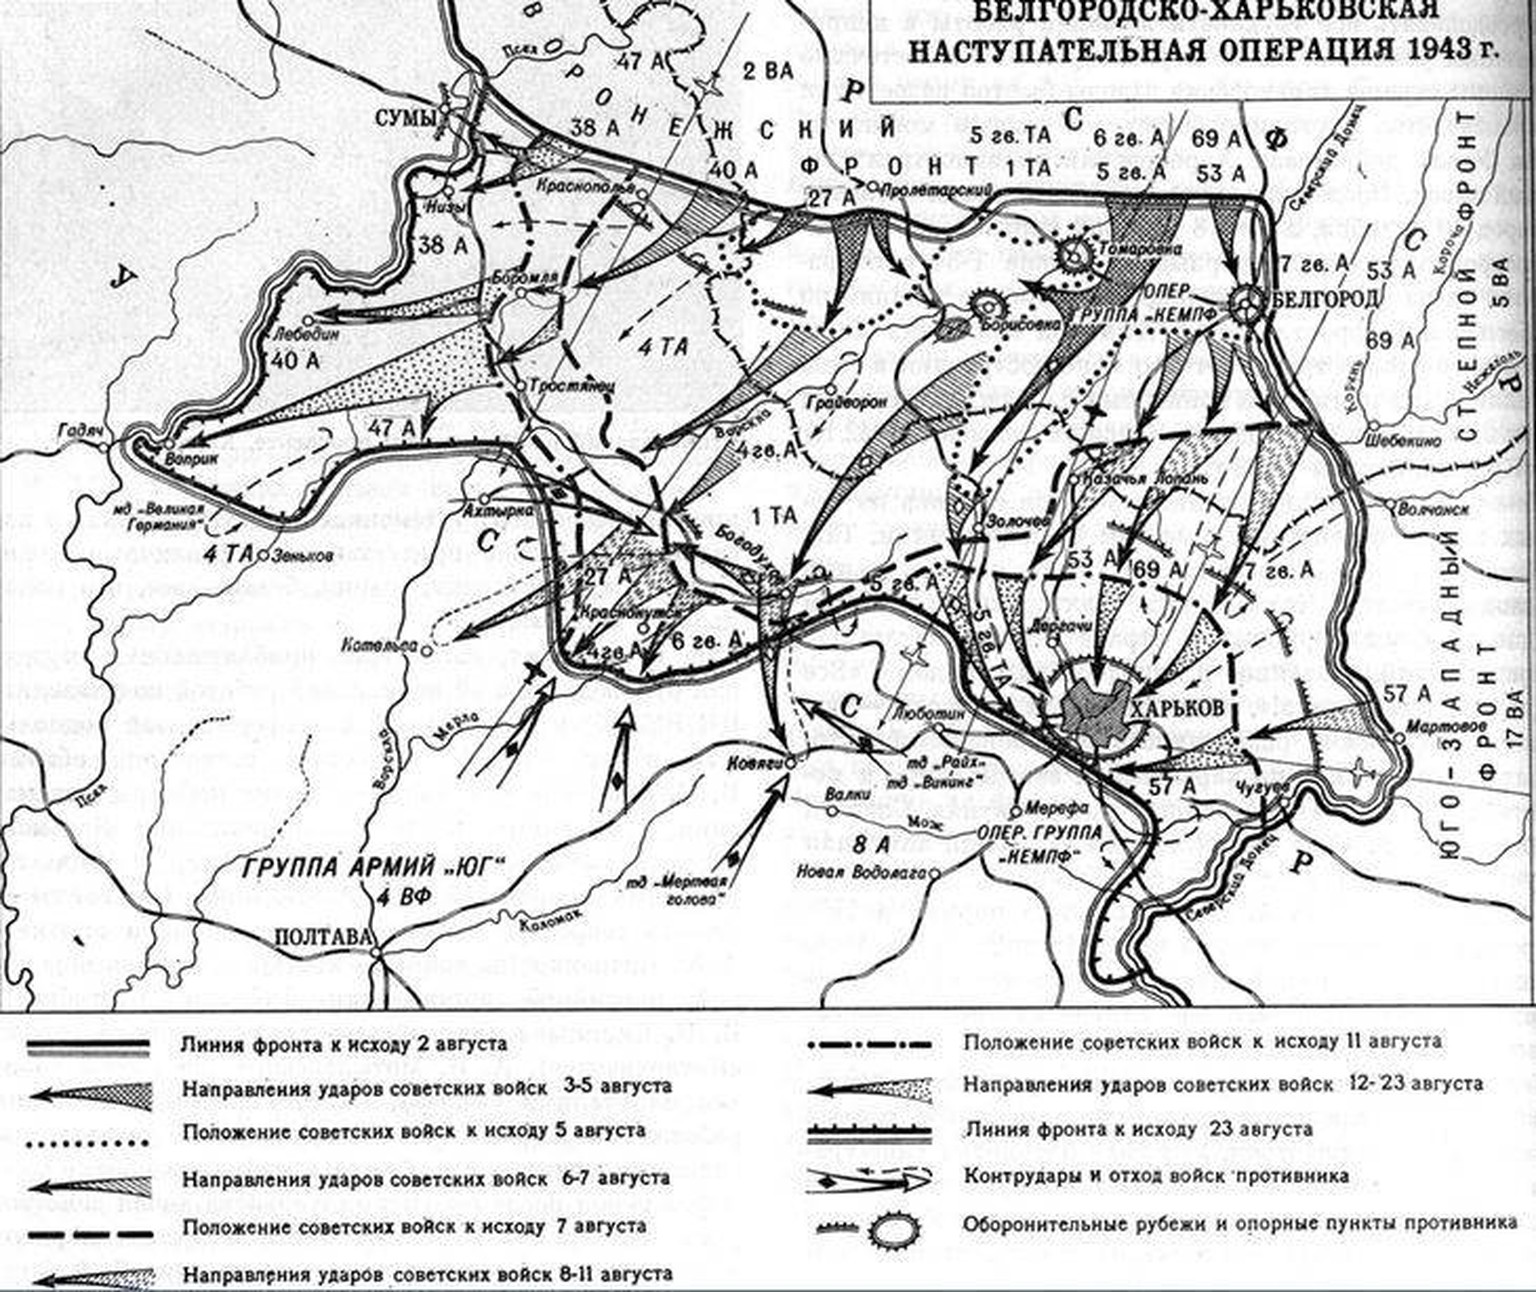 Truppenbewegungen bei der Belgorod-Charkower Operation, August 1943.